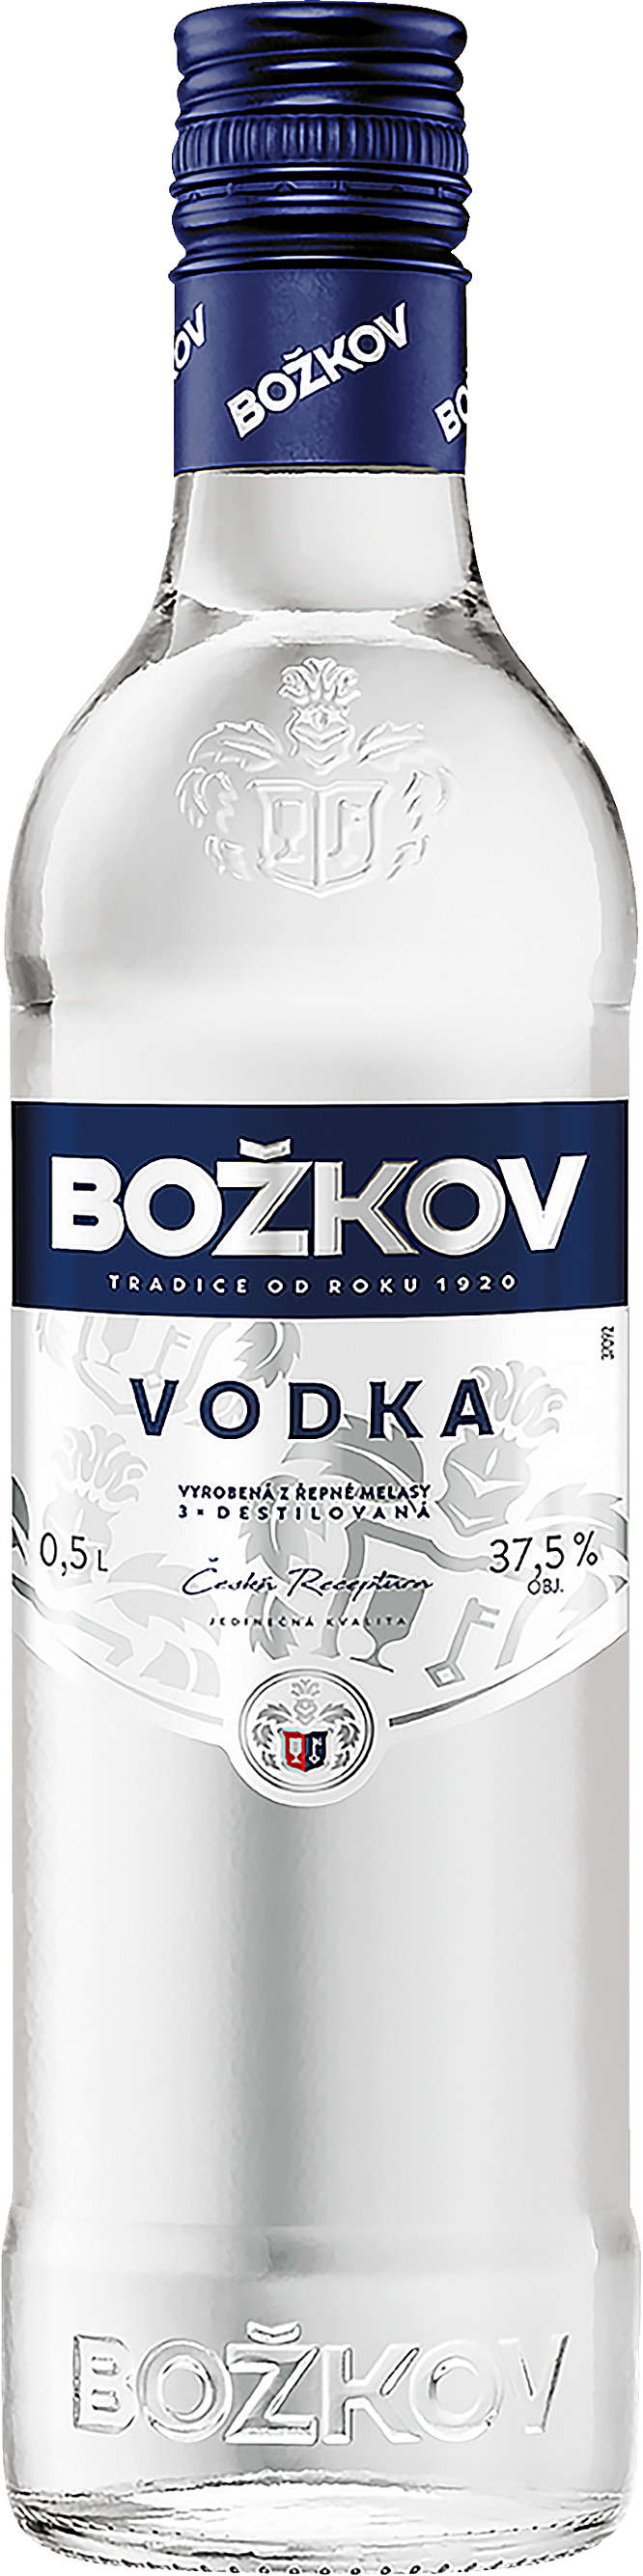 Zobrazit nabídku Božkov Vodka 37,5%